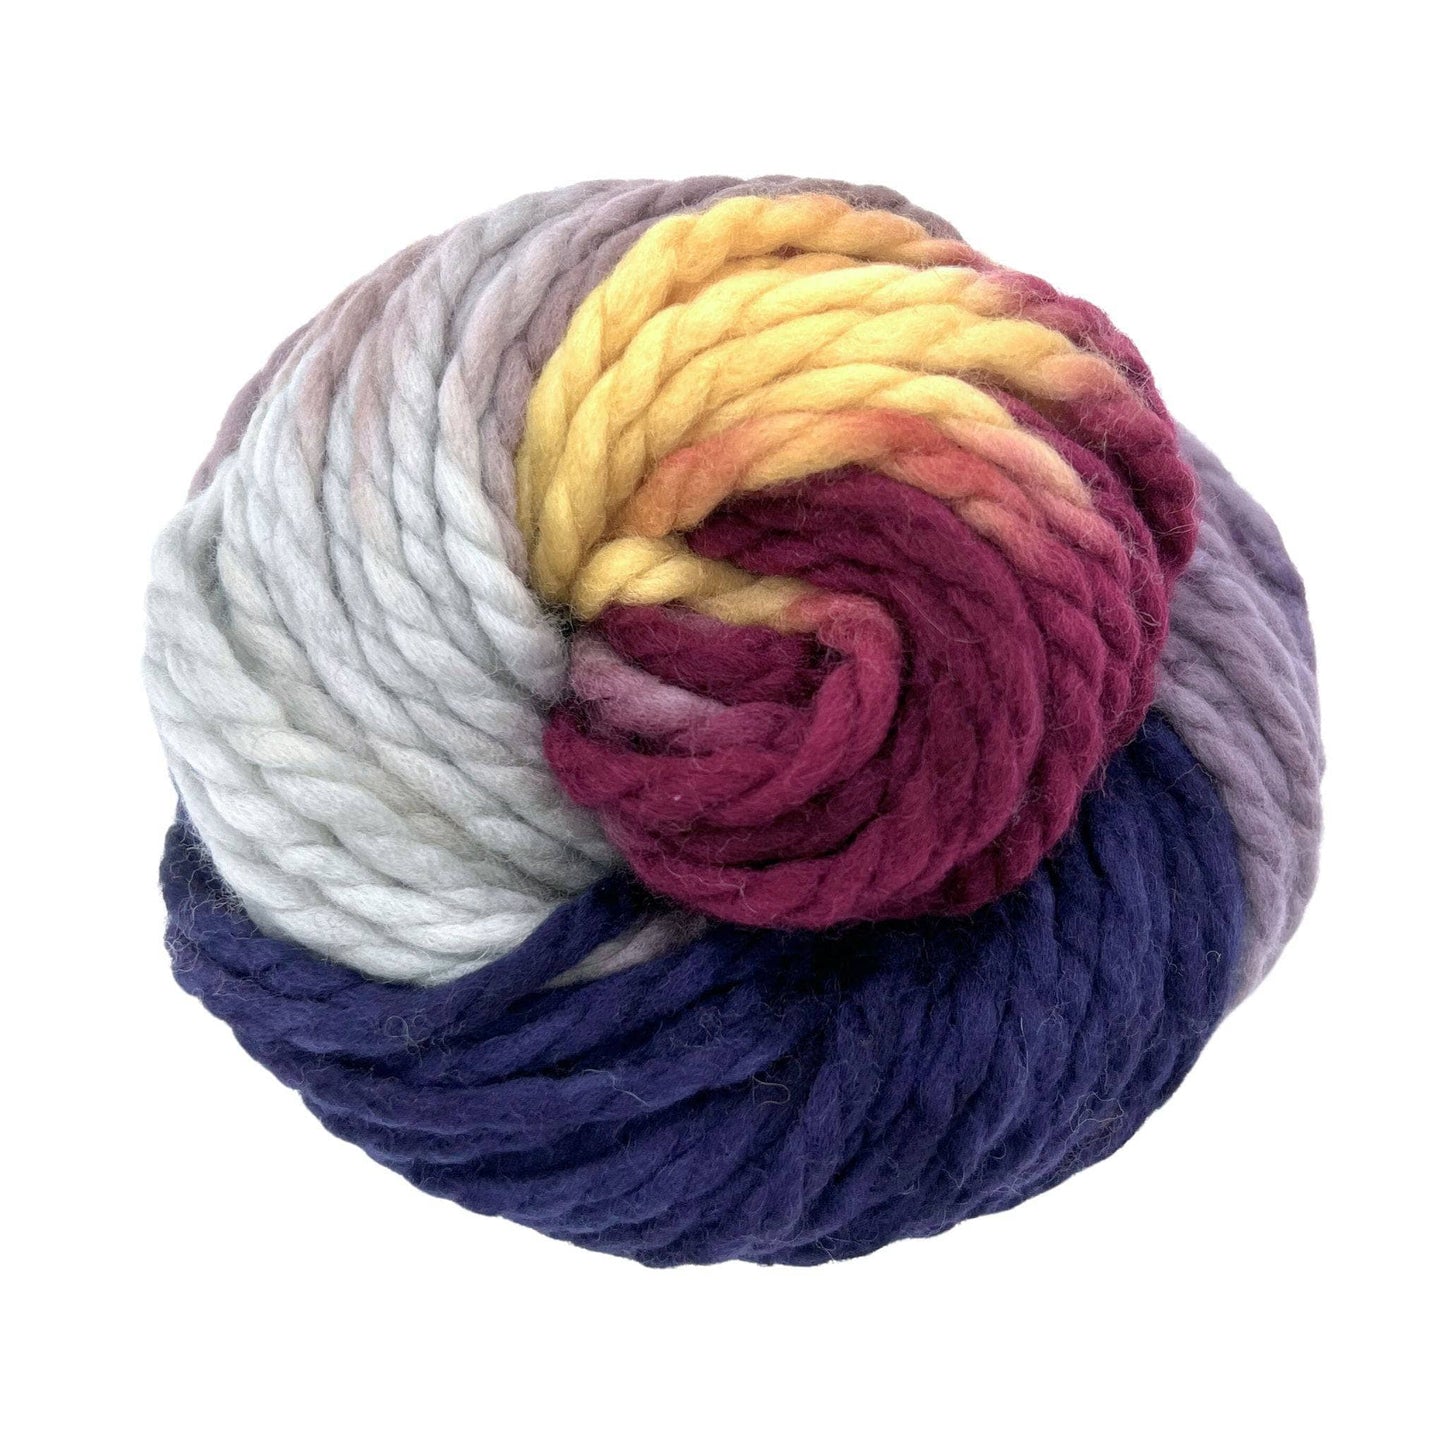 Super Bulky Highland Wool Yarn